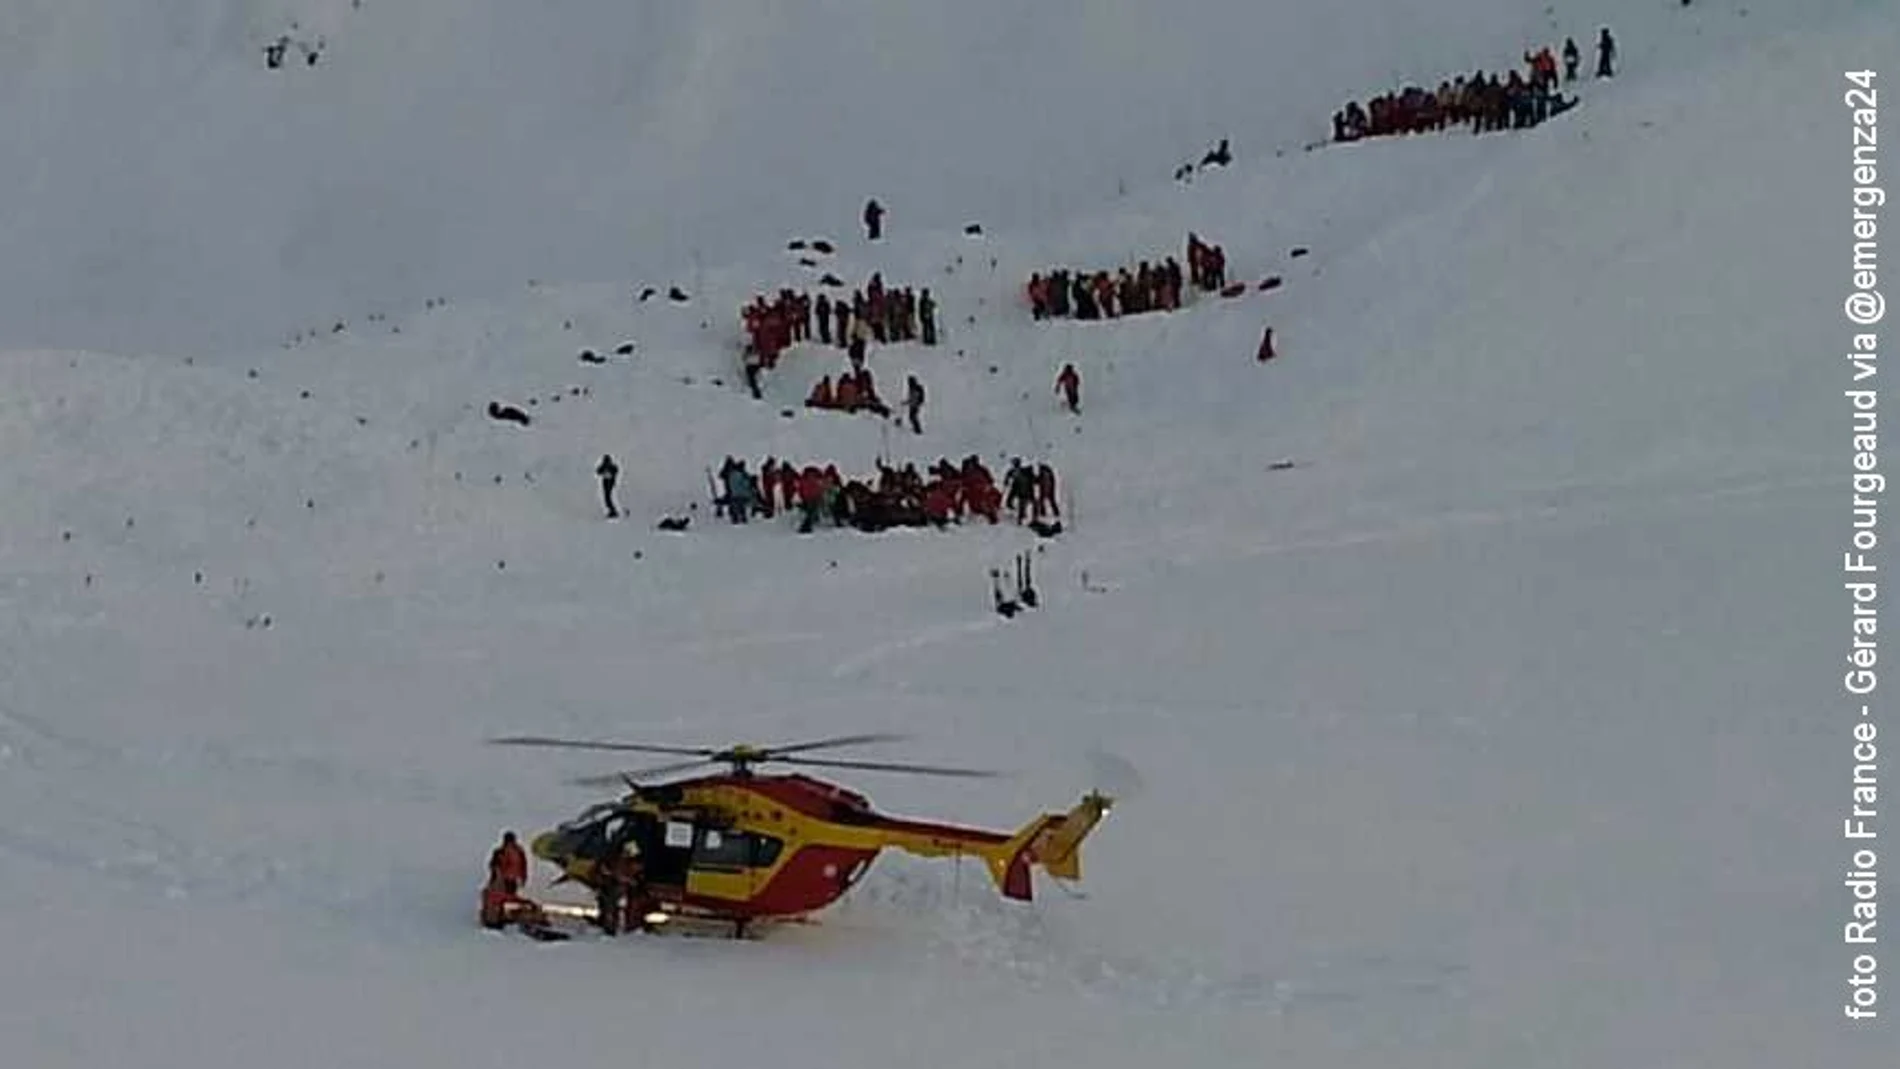 Imagen del rescate tras la avalancha en los Alpes.